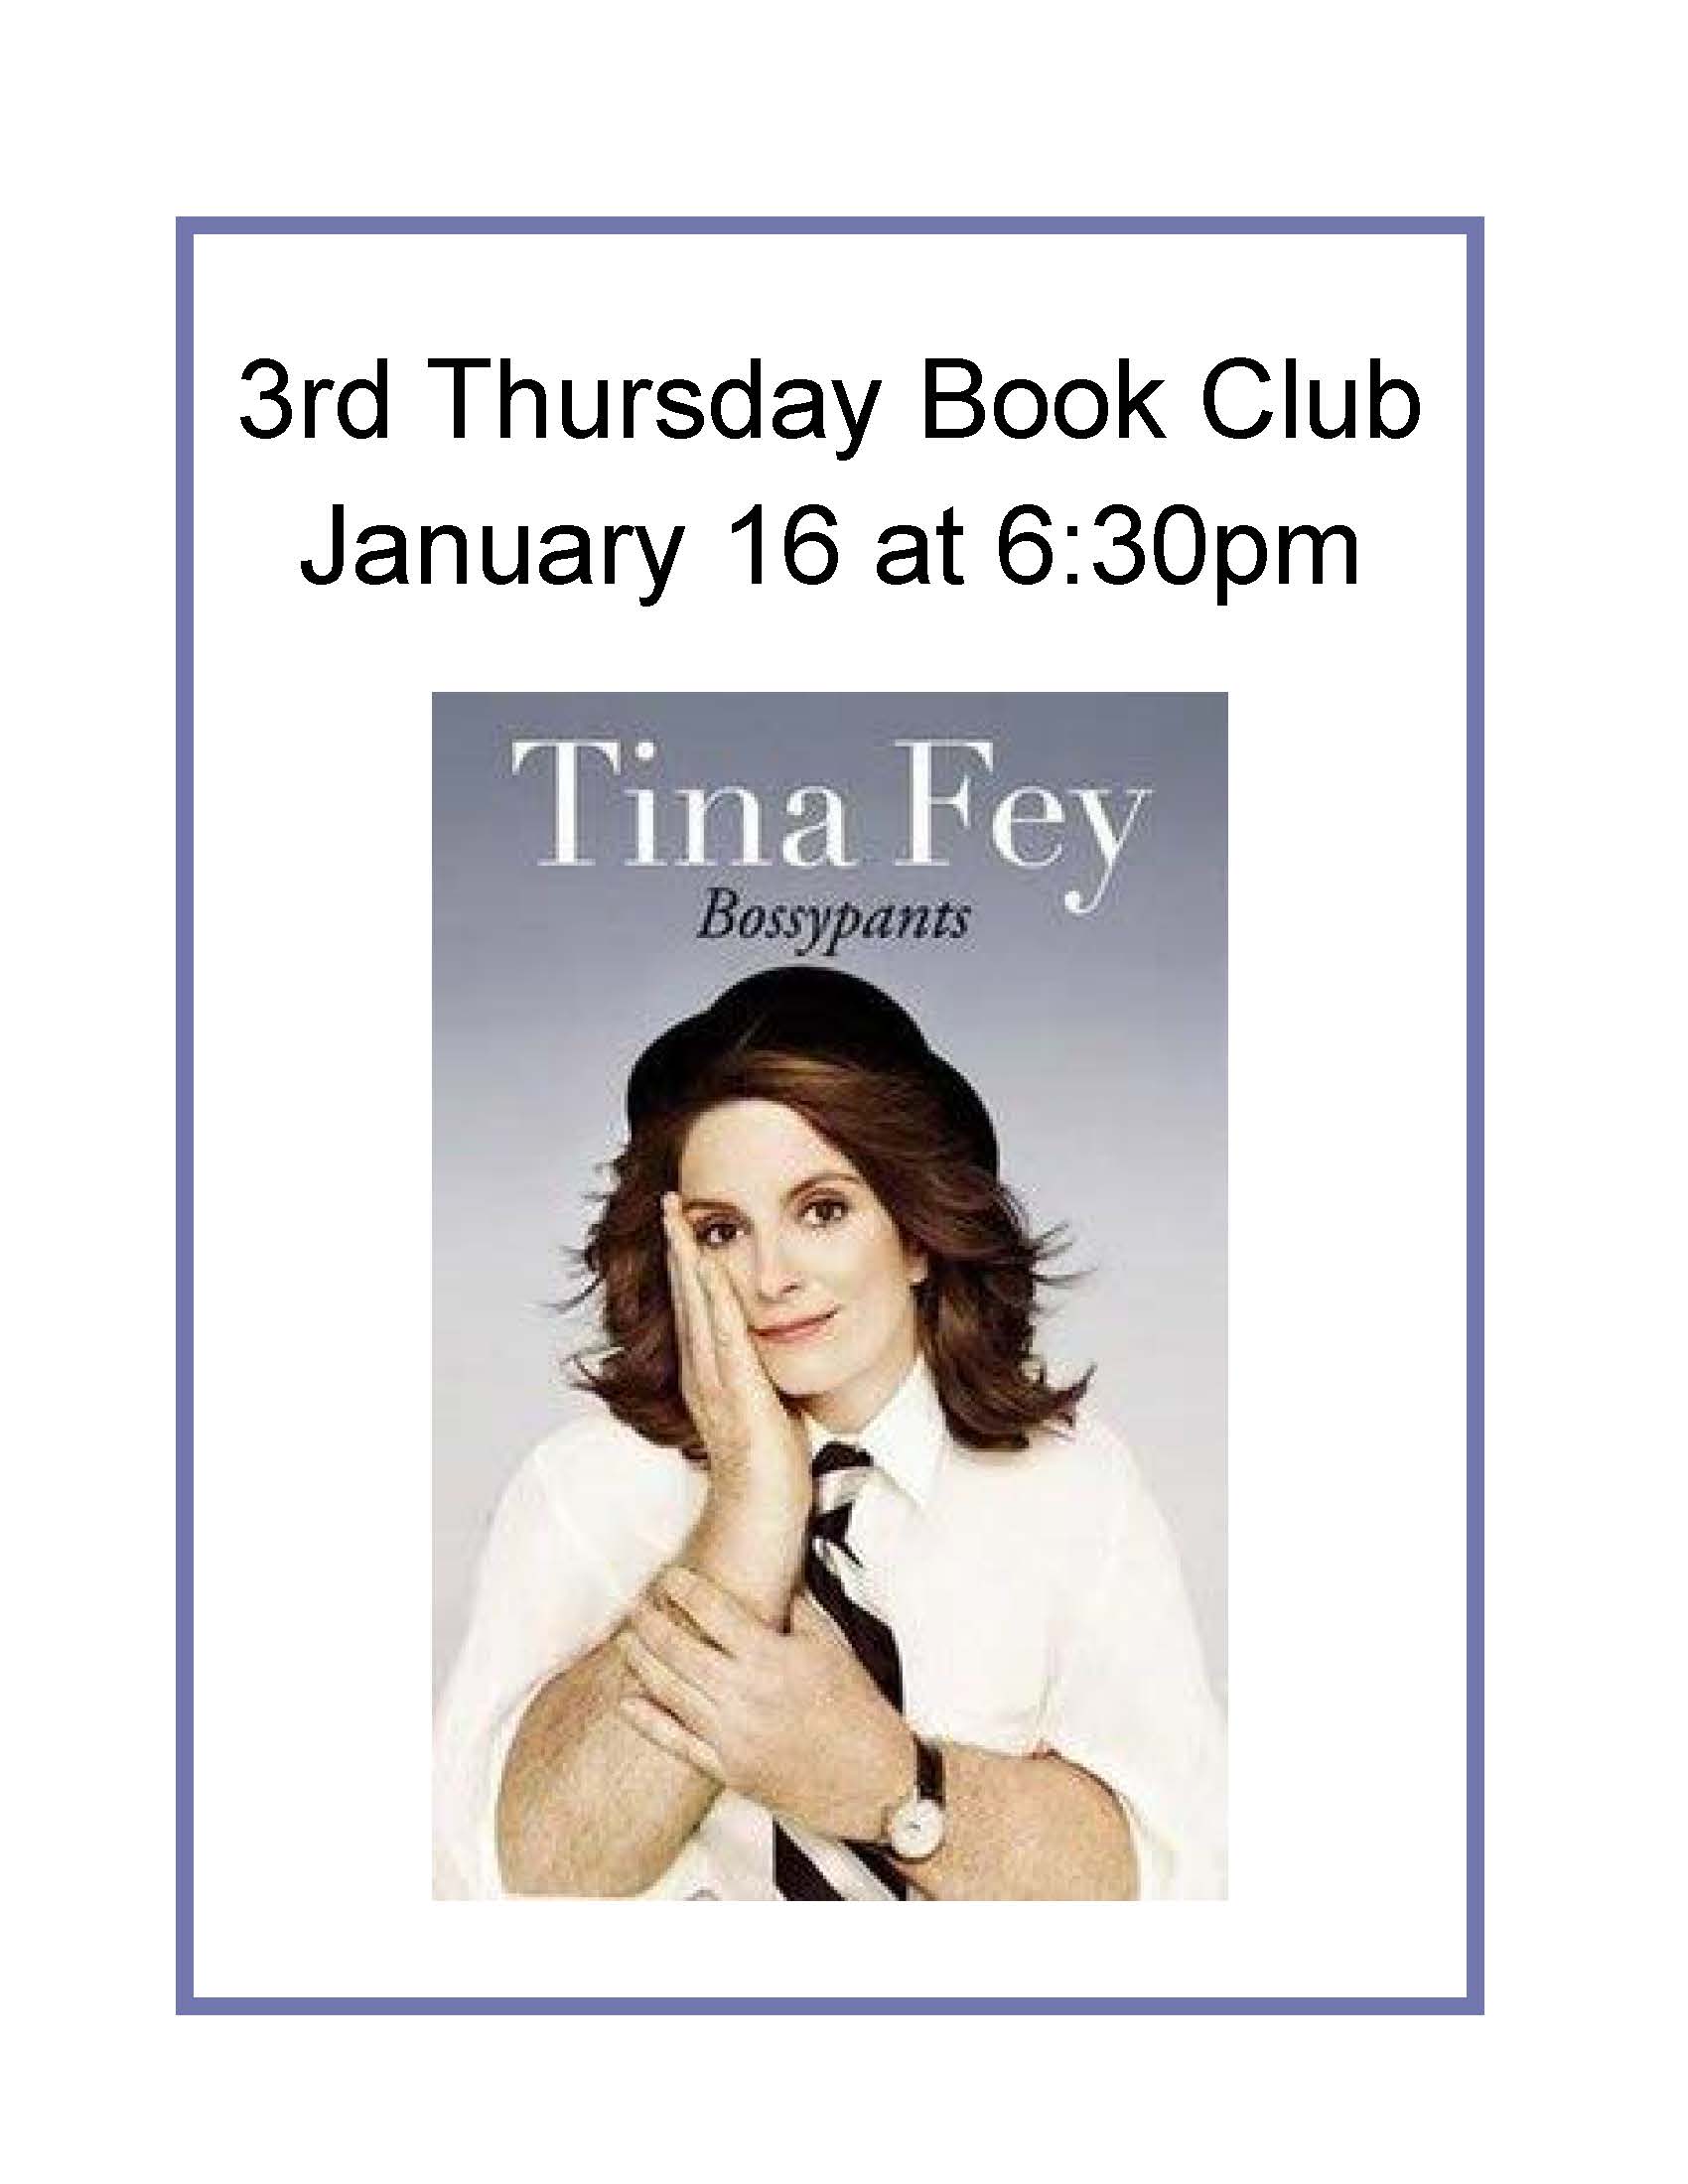 2001 book club flyer.jpg